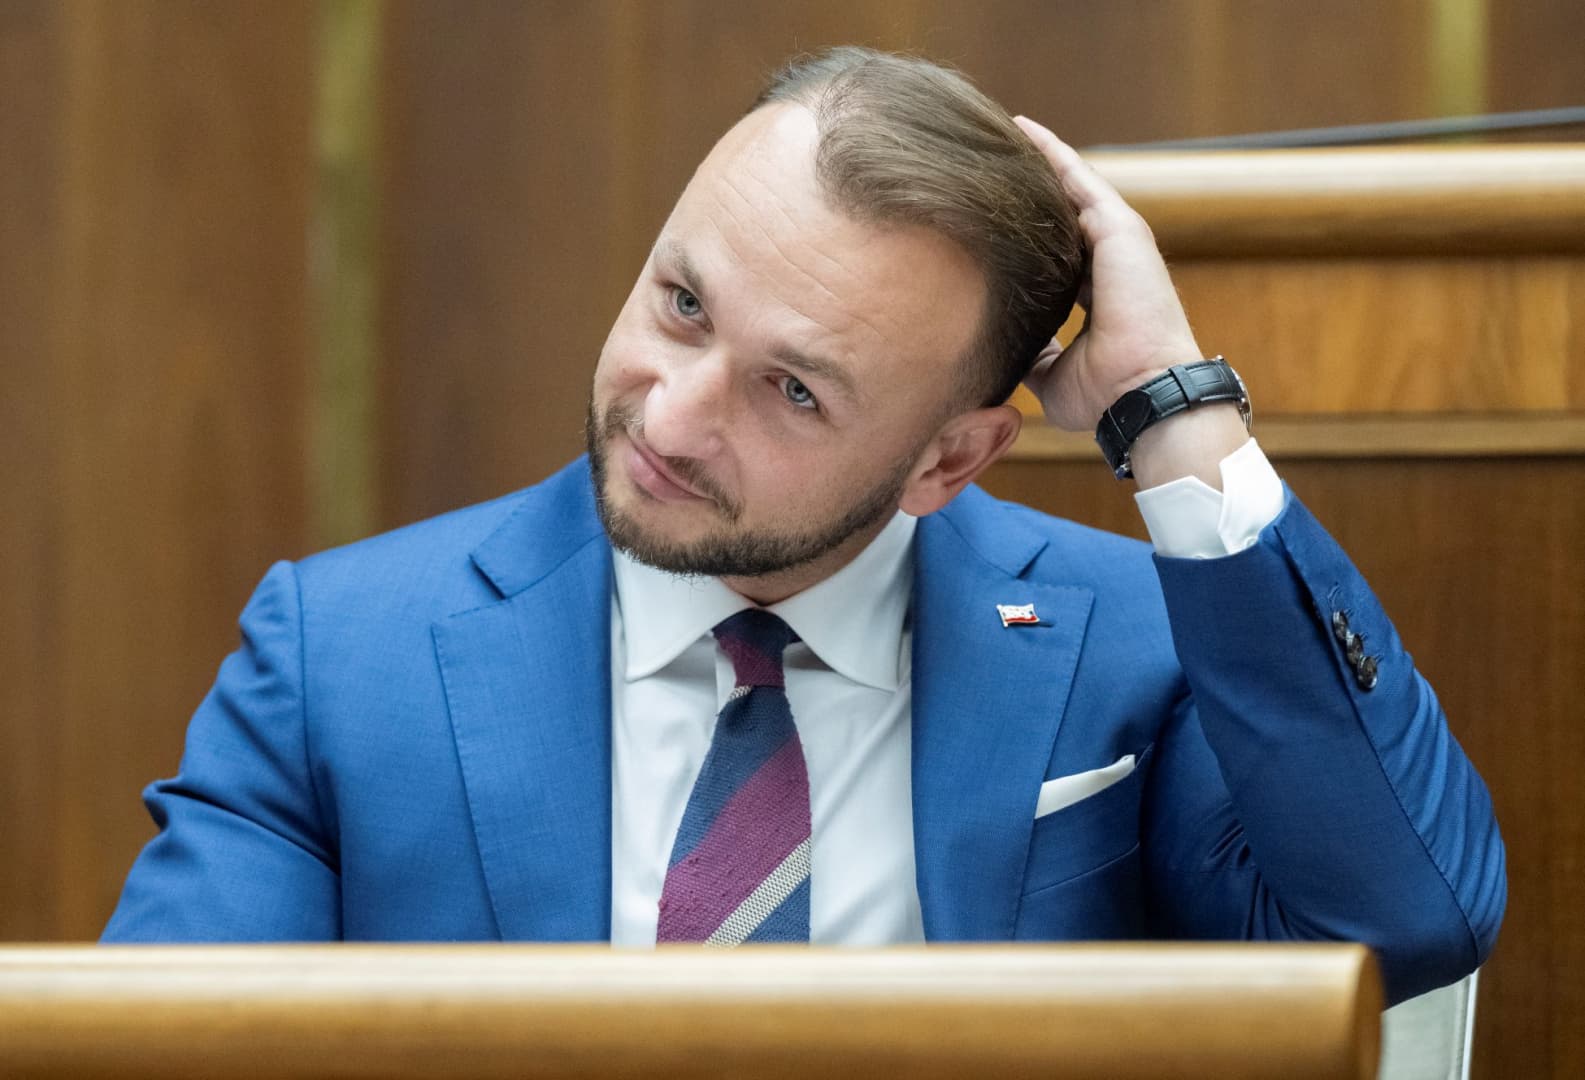 Spišiak: A belügyminiszternek már régen le kellett volna mondania, vagy a kormányfőnek kellett volna őt leváltania